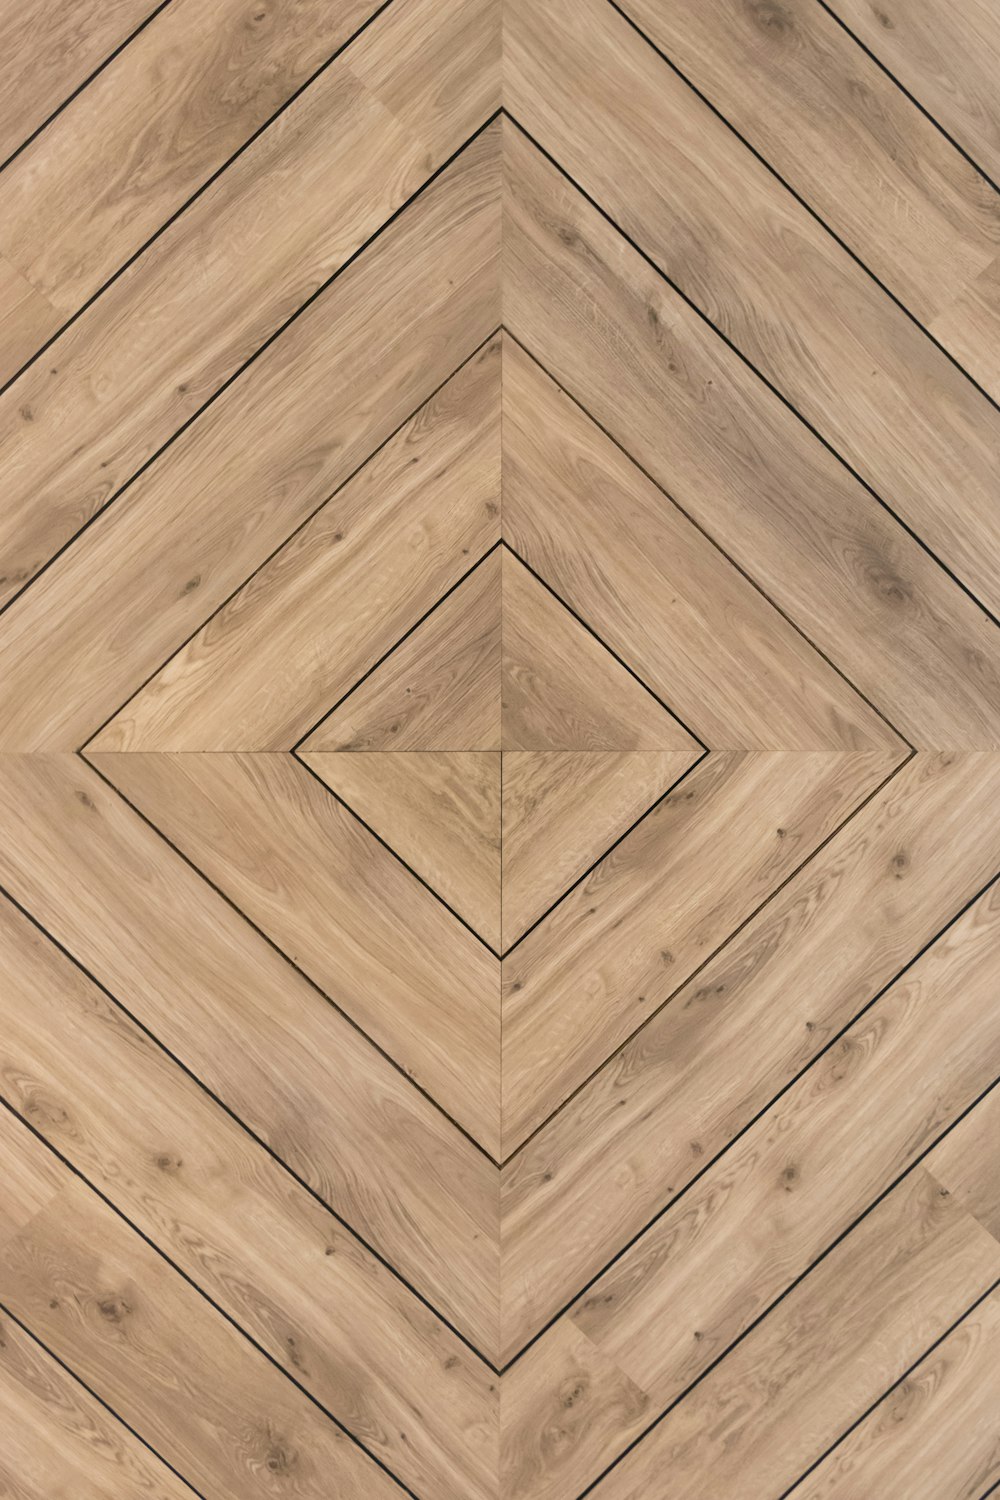 brown wooden parquet floor tiles